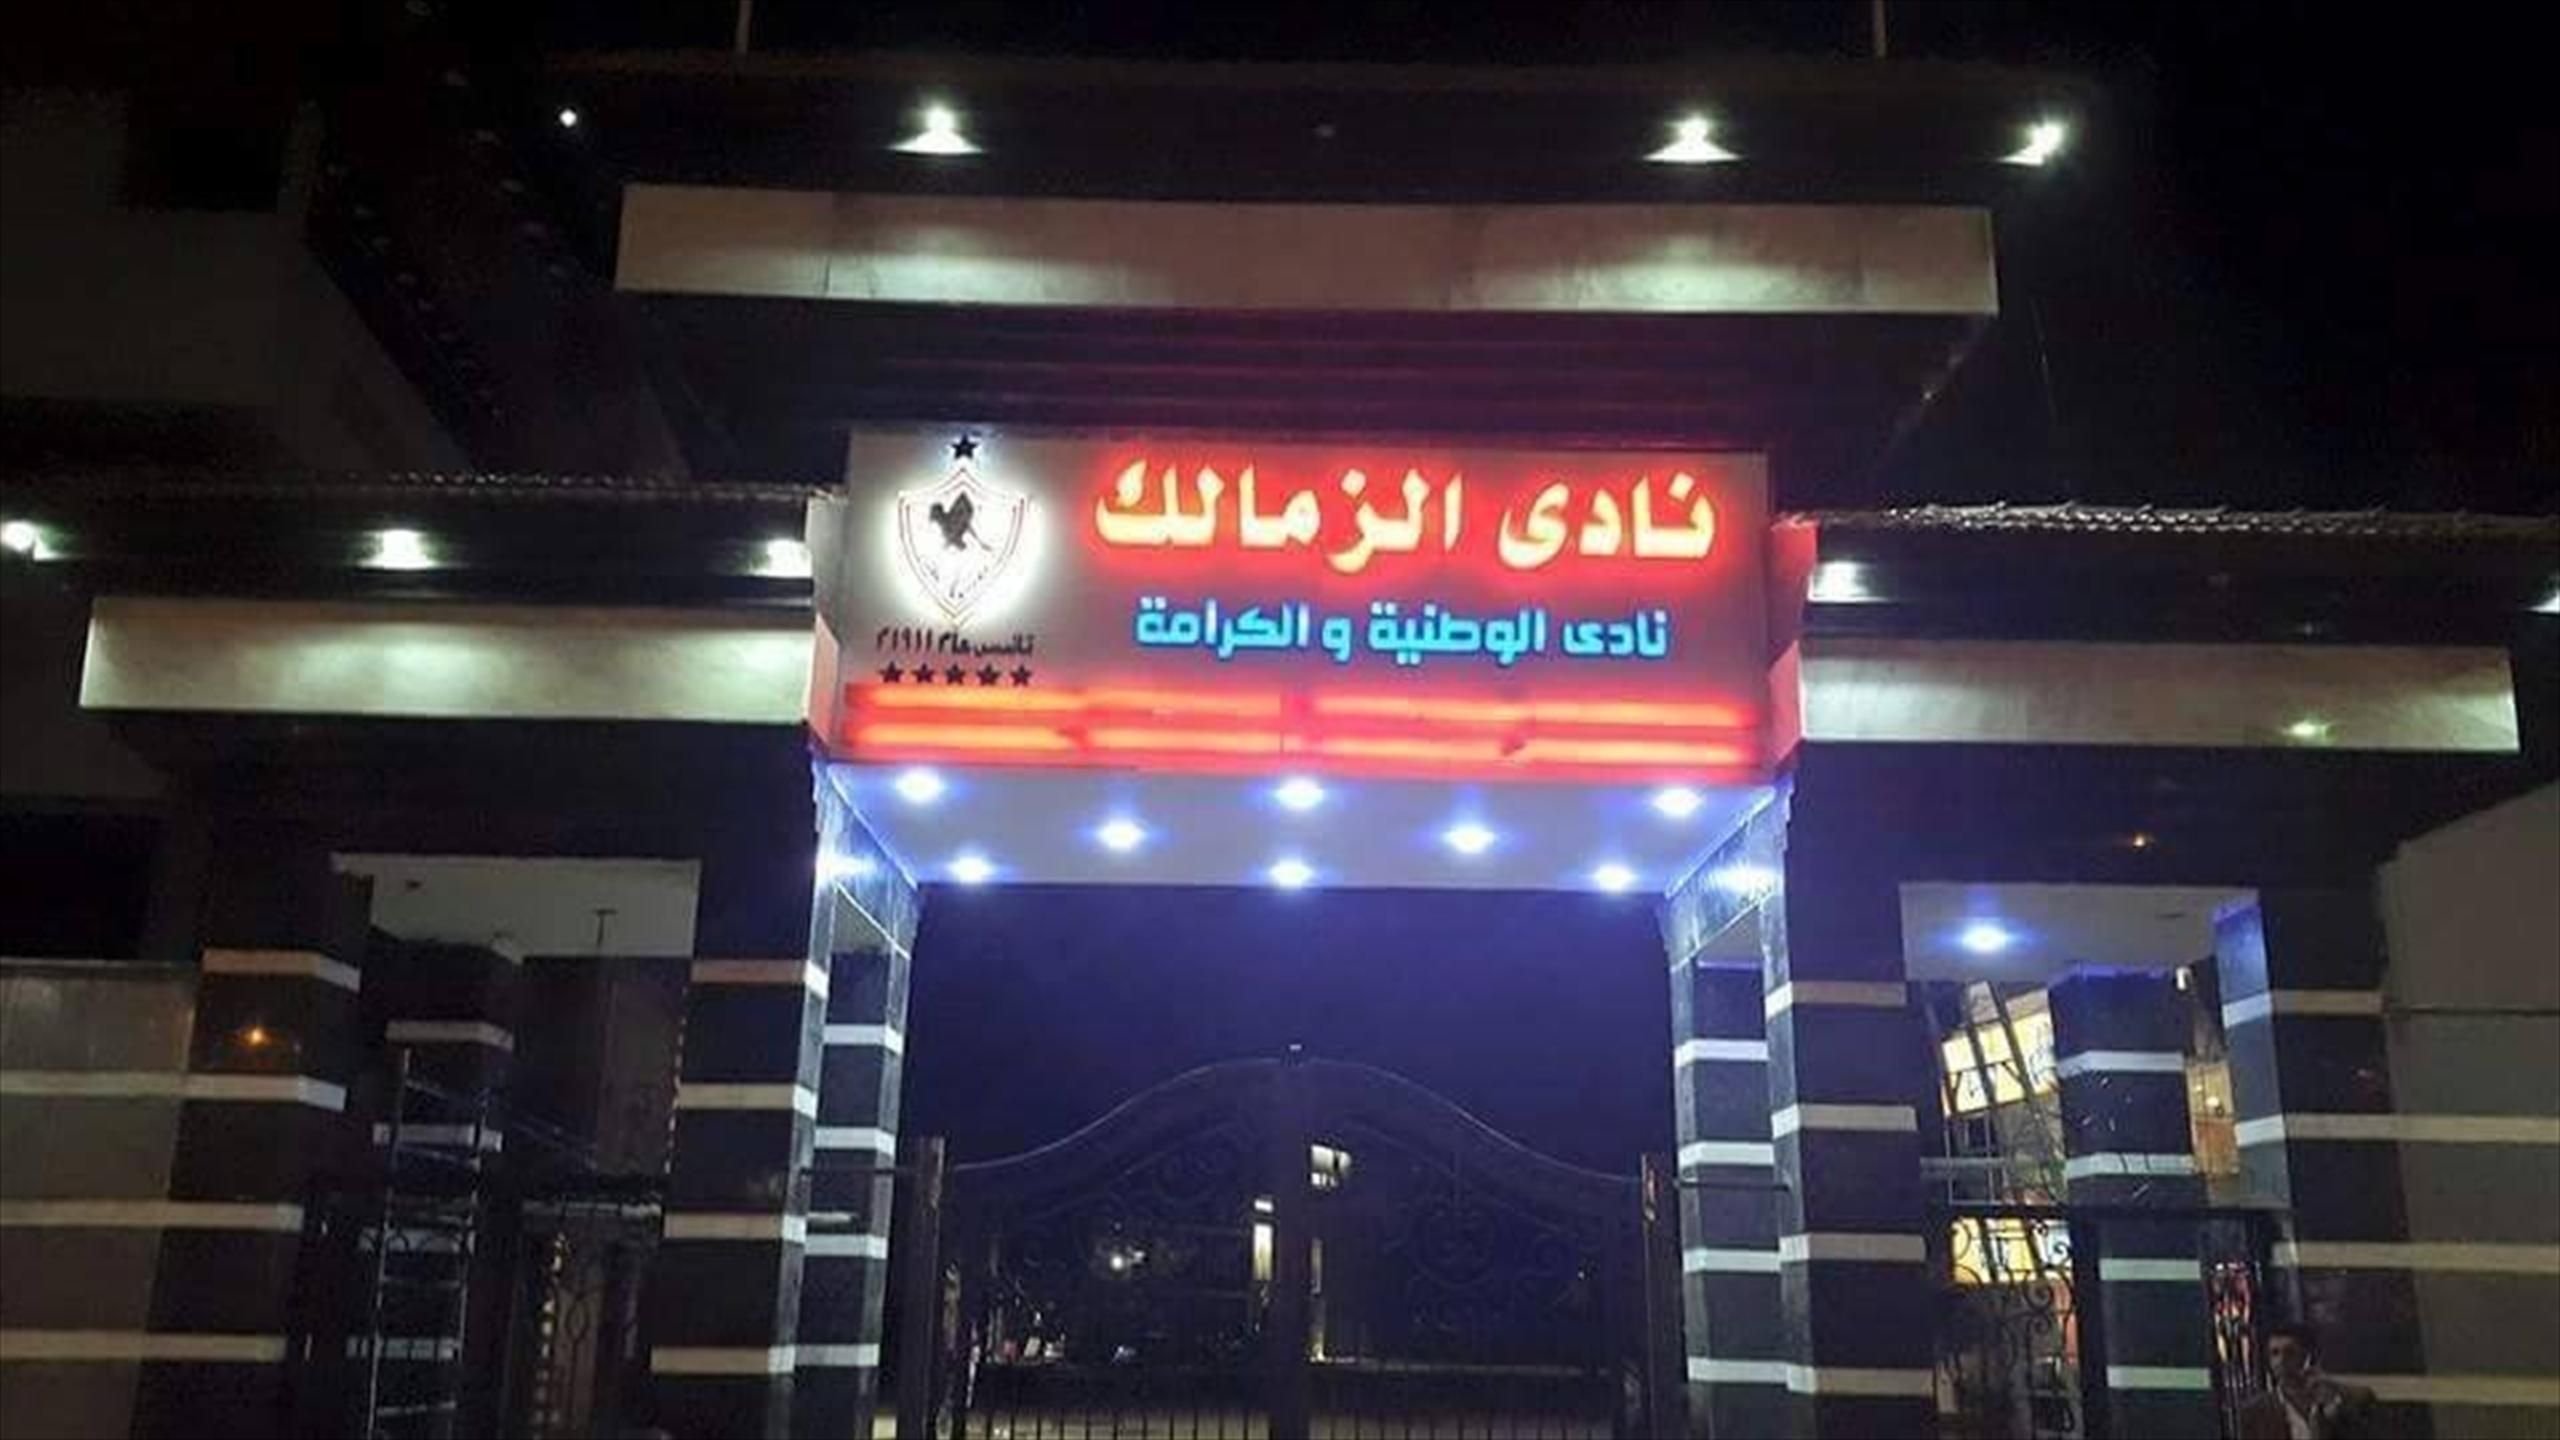   الزمالك يخاطب السلطات المغربية لعودة بن شرقى وأوناجم